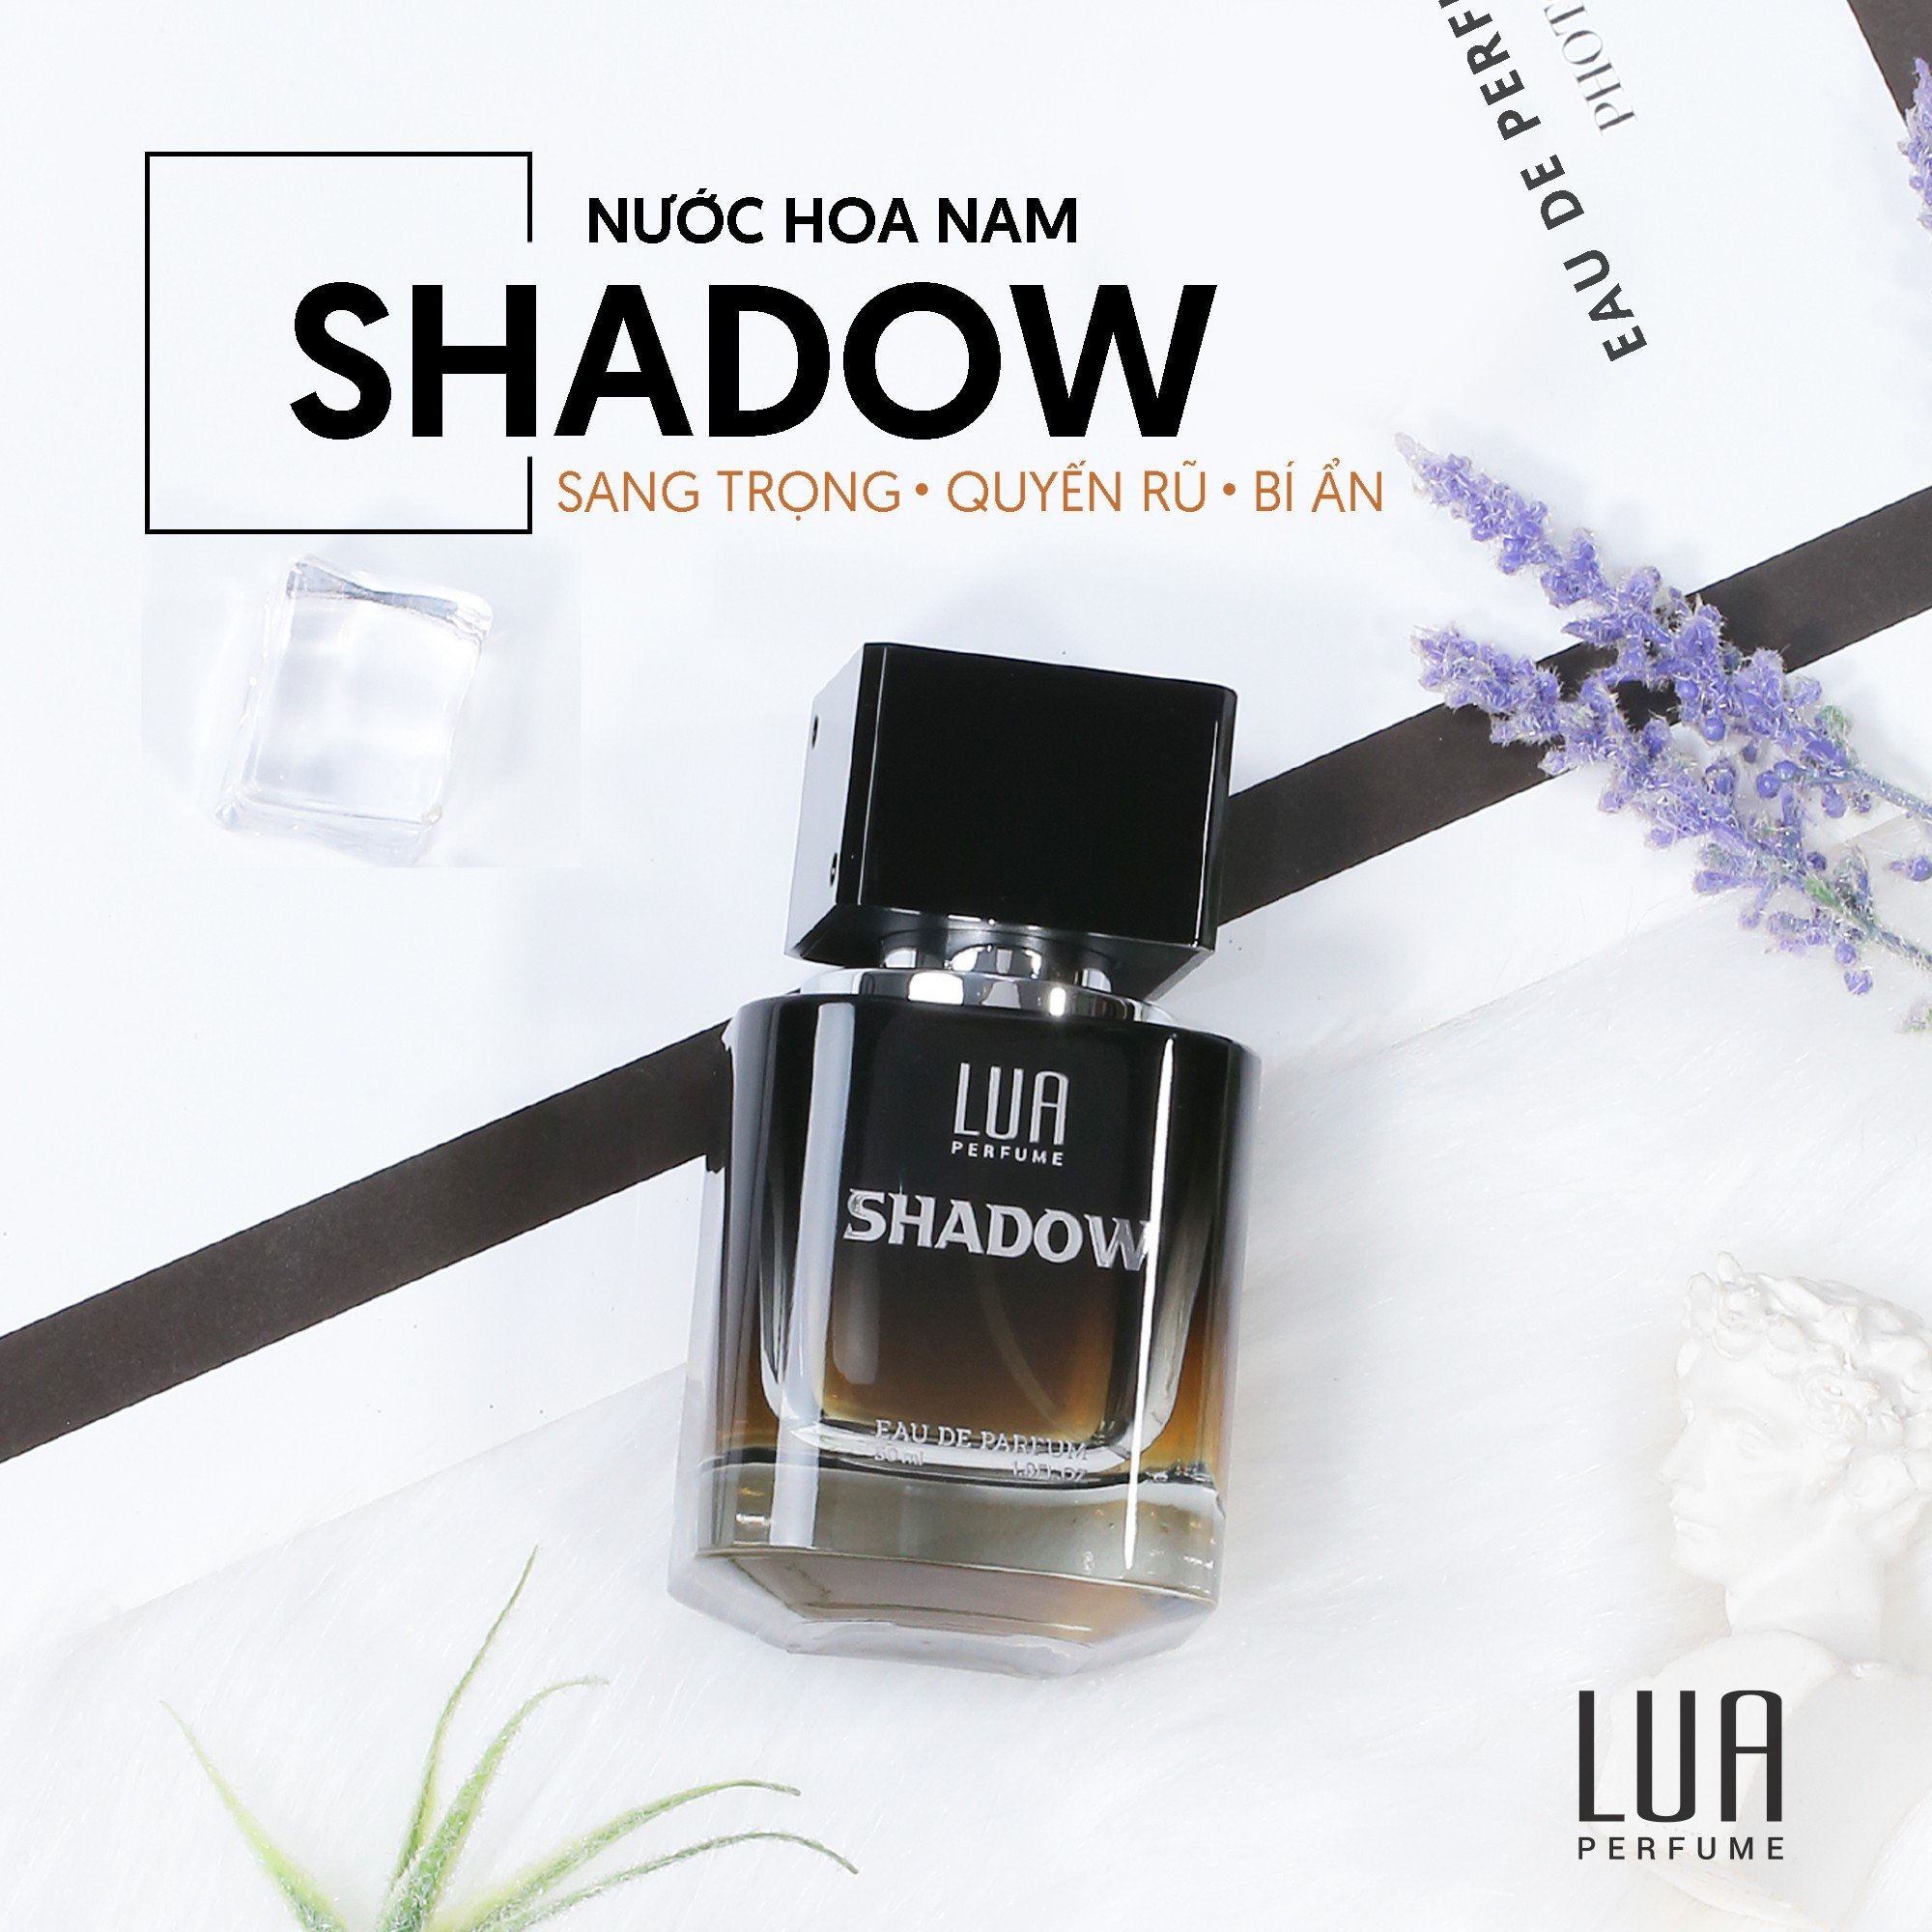 Sử dụng nước hoa Shadow để trải nghiệm một hương thơm đầy mê hoặc và đẳng cấp